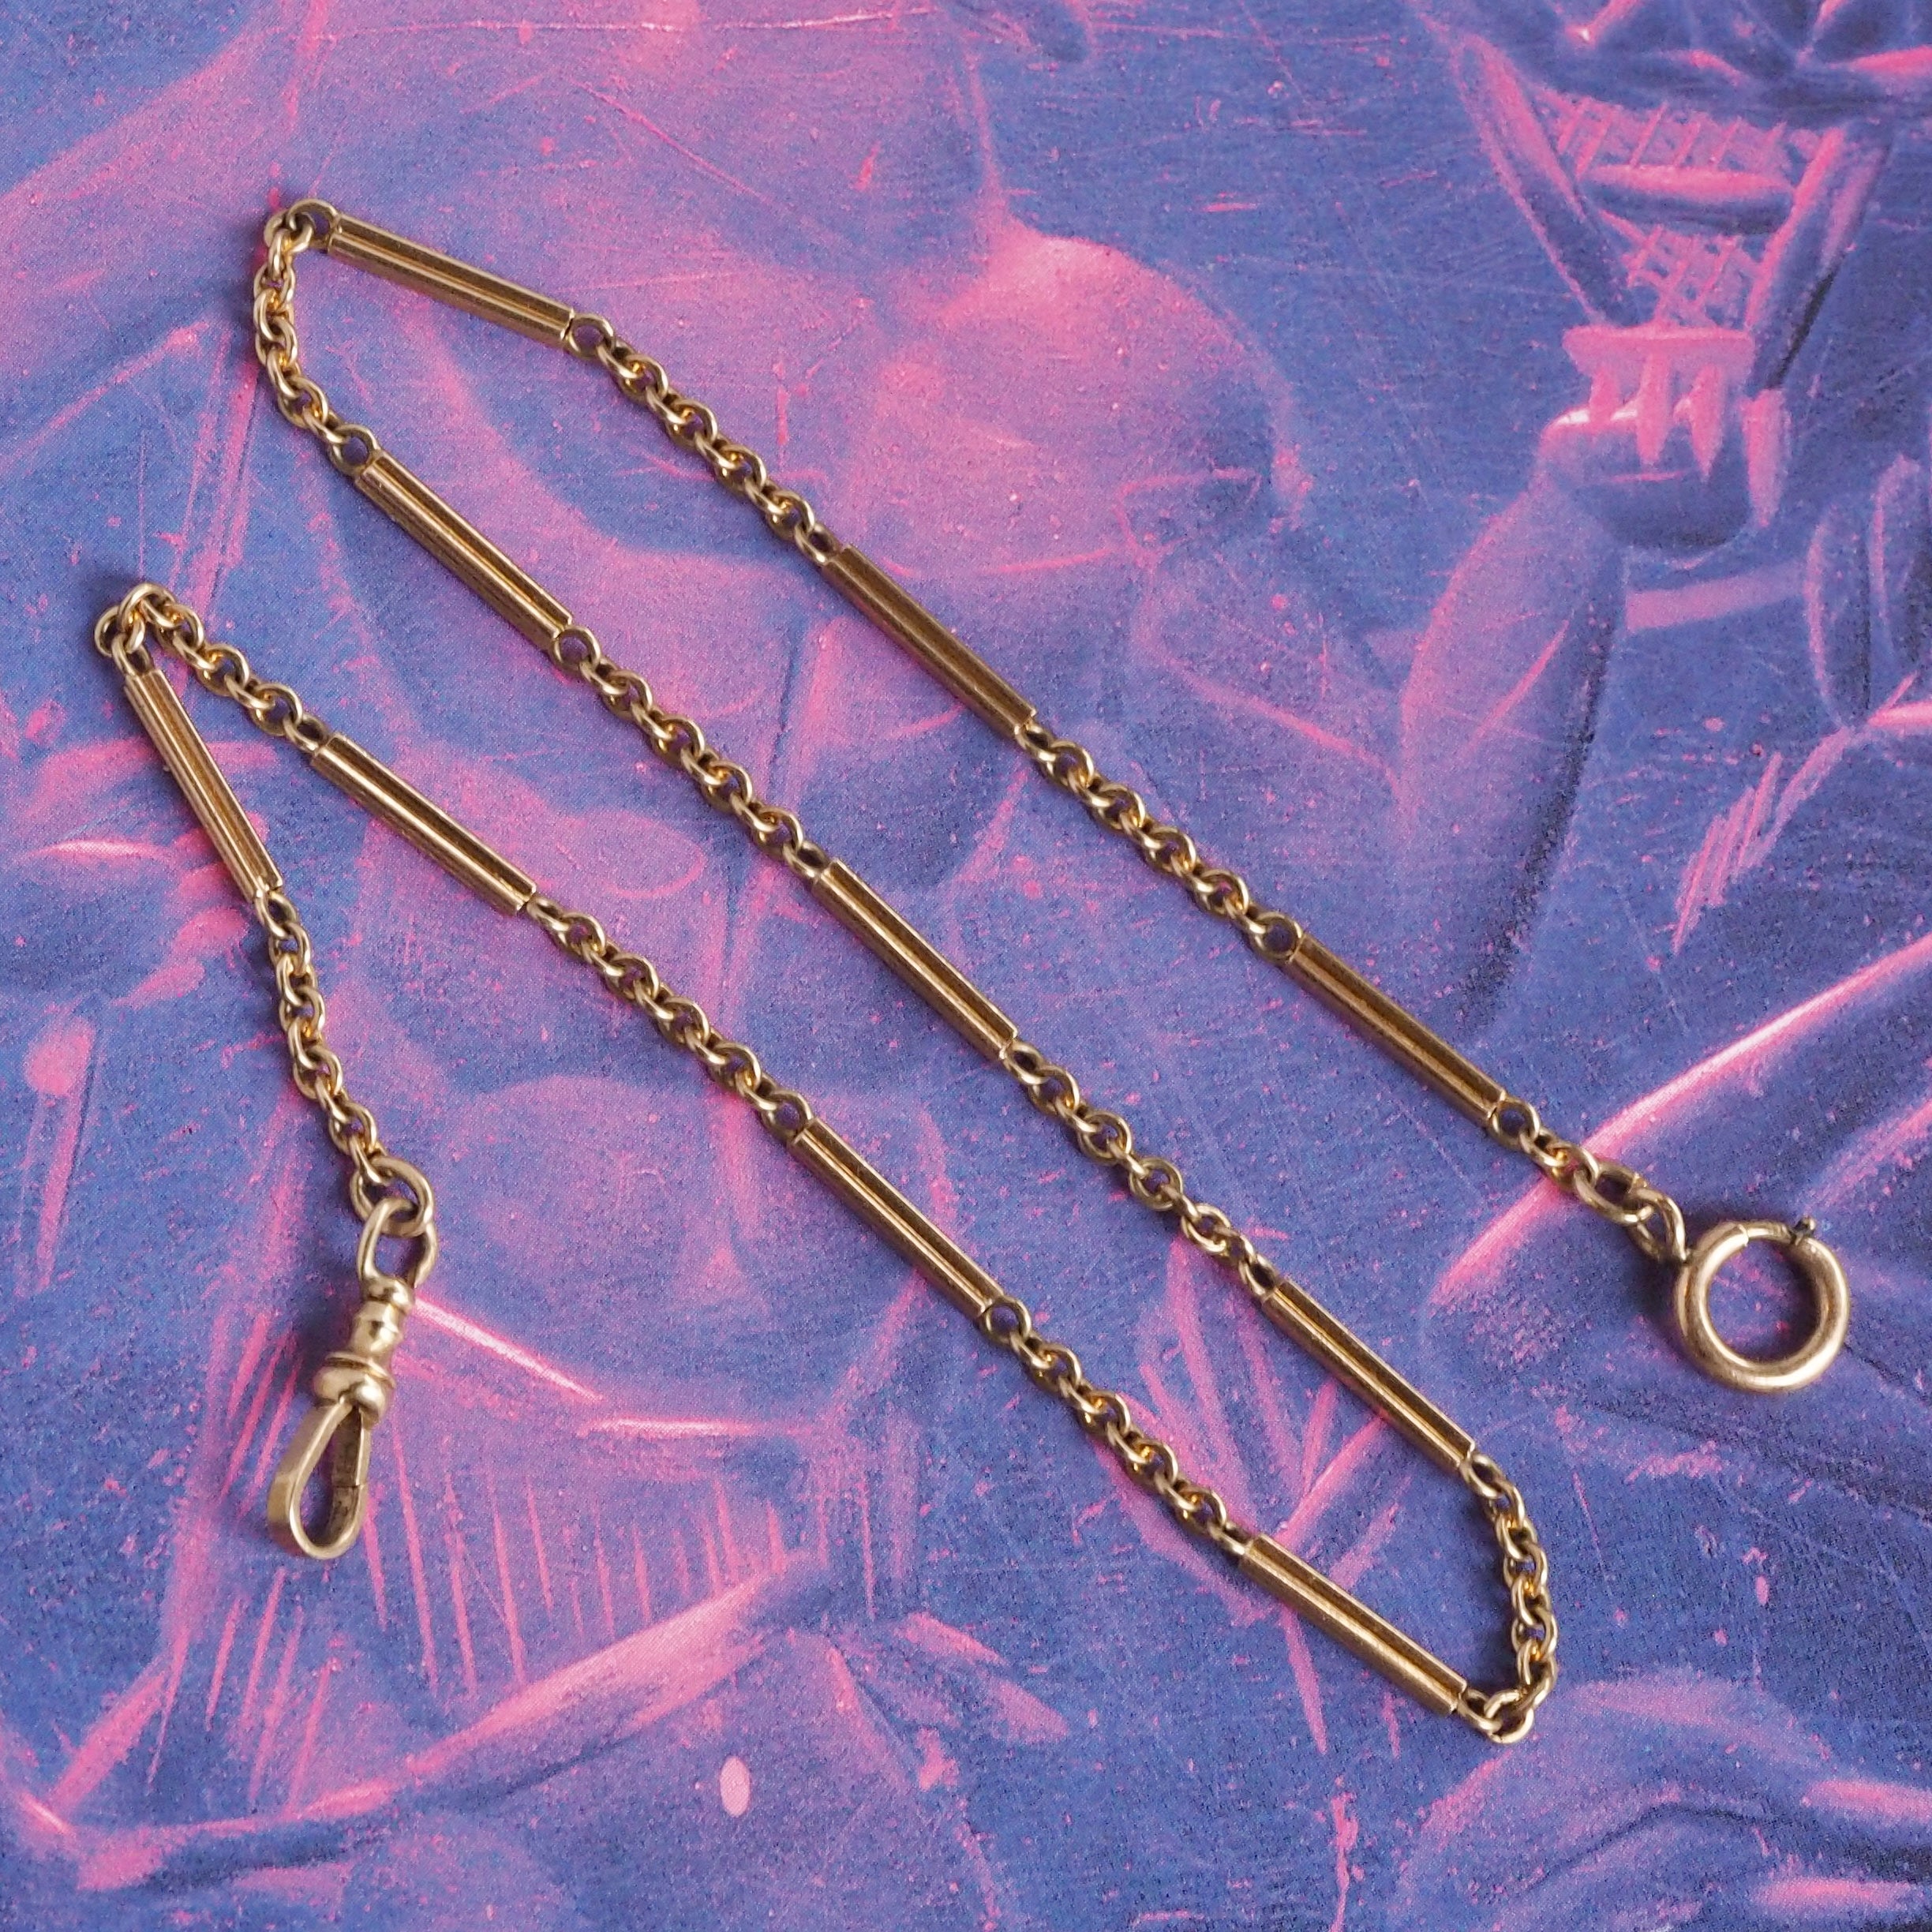 Antique 10k Gold Watch Chain Double Wrap Dog Clasp Bracelet